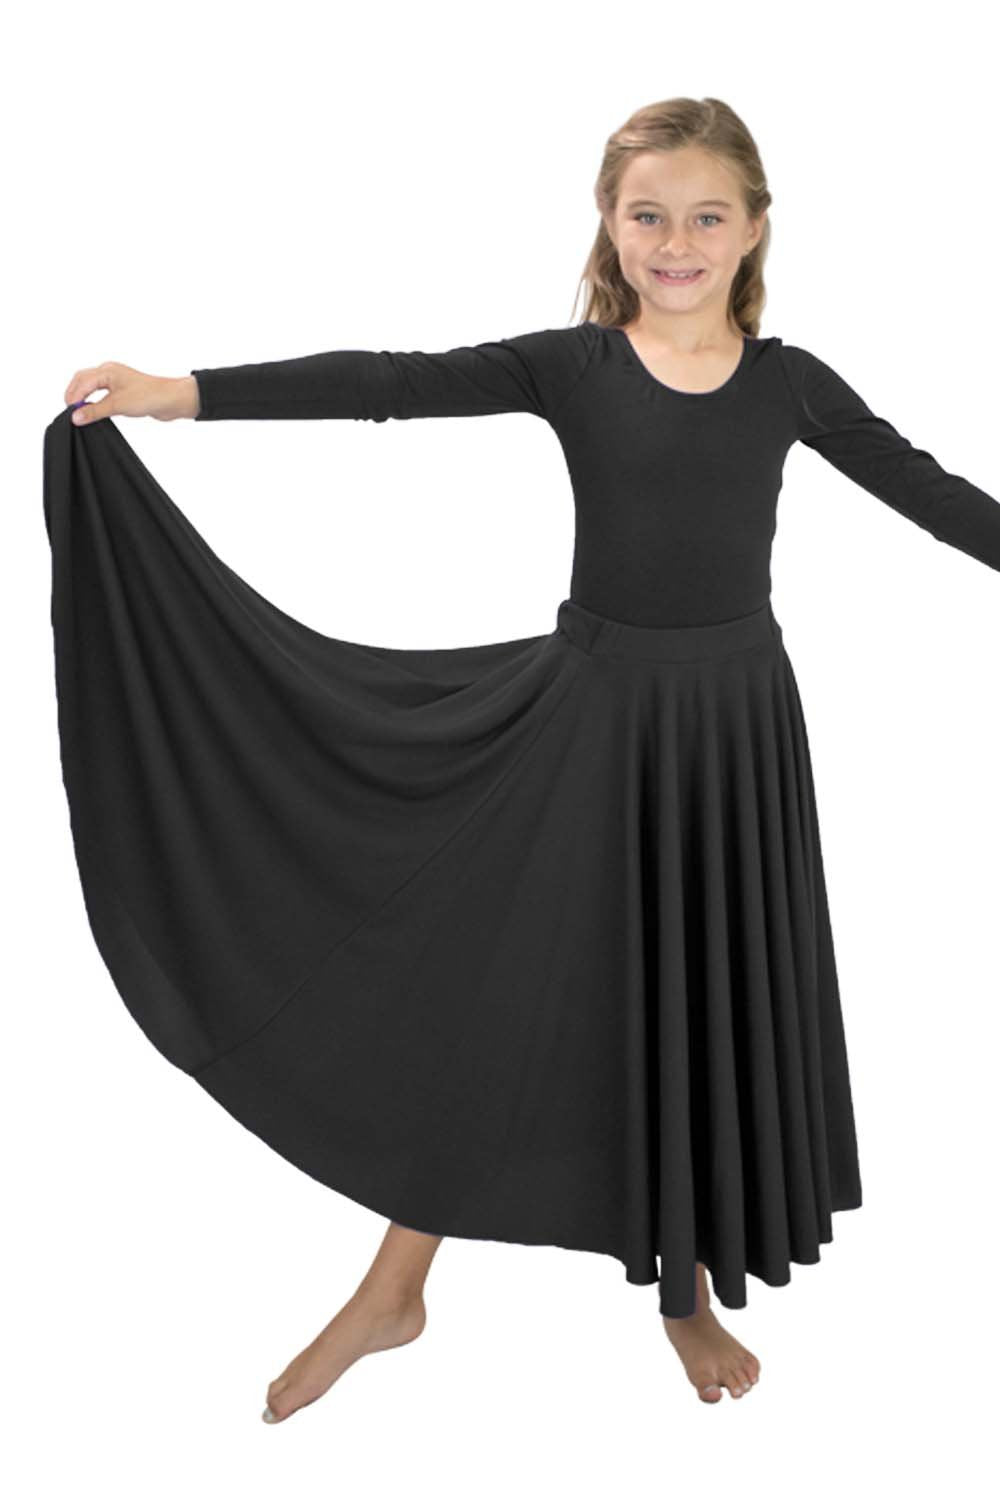 Girls' Liturgical 540 Degree Skirt